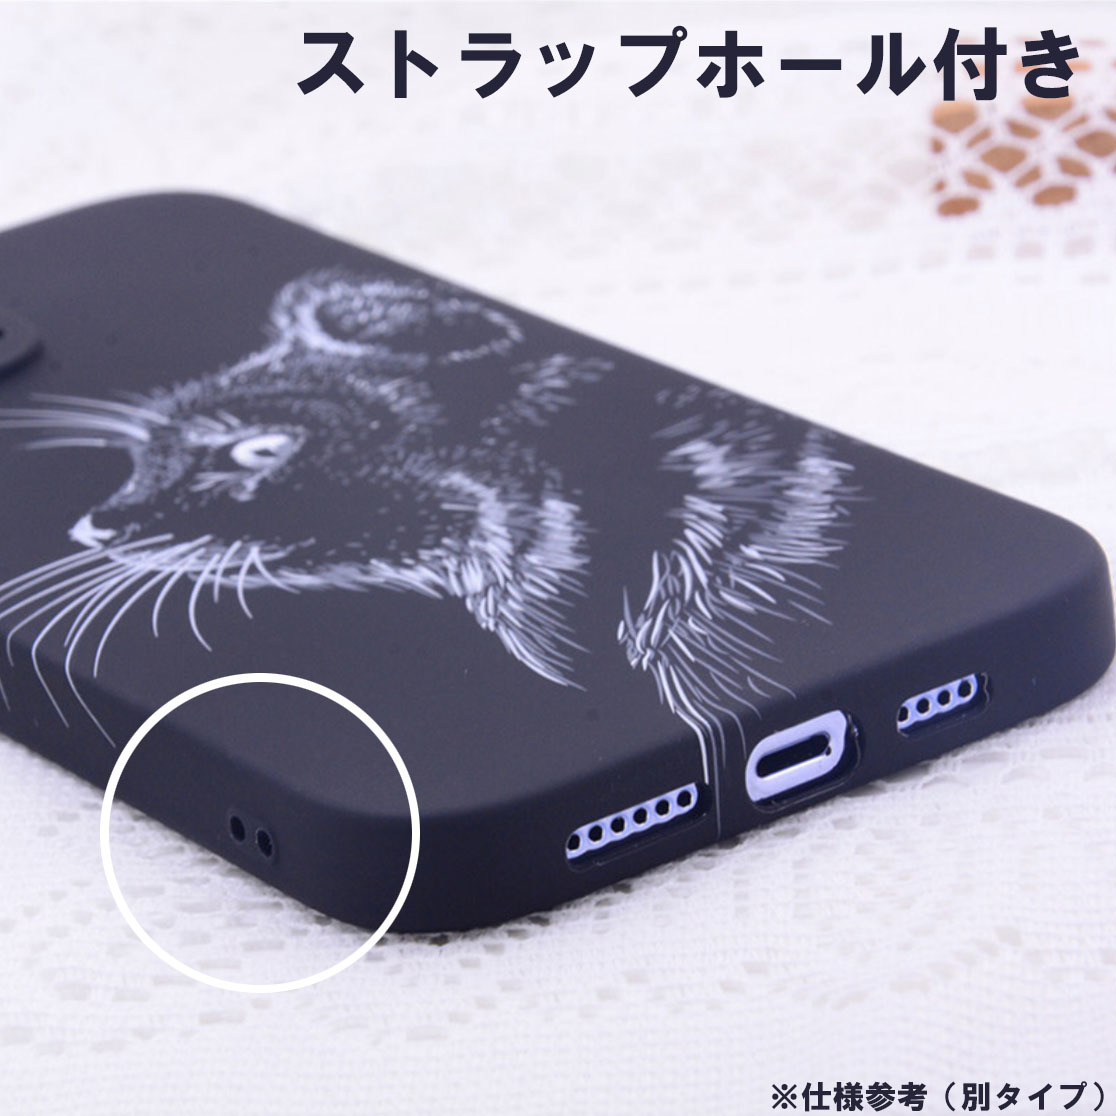 蓄光 光る 発光 耐衝撃 ソフト スマホケース iphone 14 pro 対応 エレファント 象 カワイイ 個性 カラフル ブラック カバー